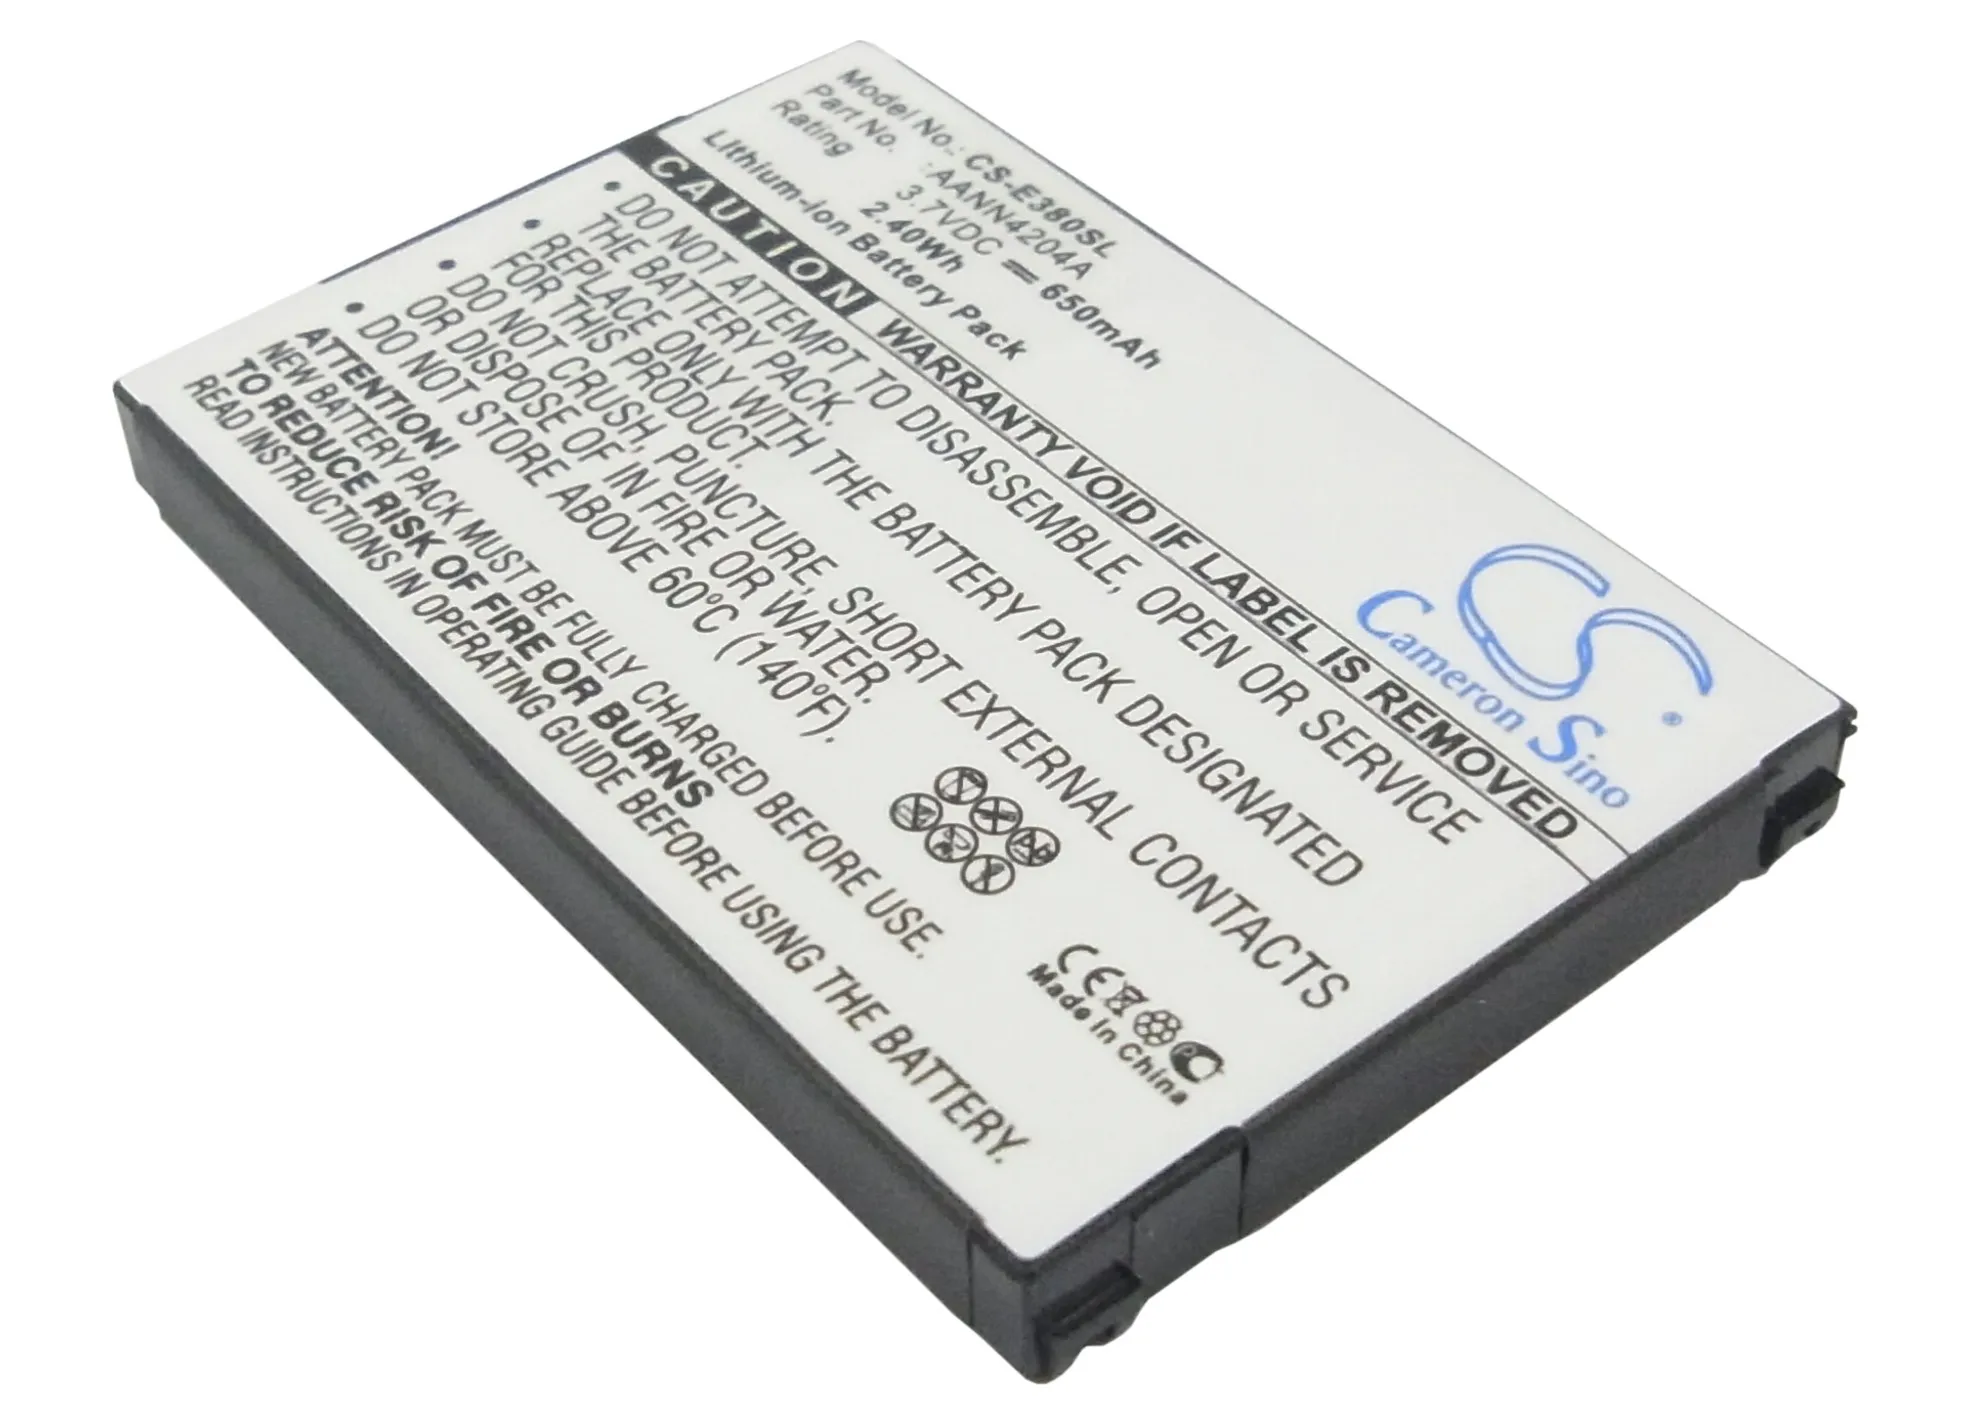 Кэмерон Sino 650 мАч батарея AANN4204A для Motorola C550, c5555, C560, C650, C651, E375, E378, E378i, E380, V188, для Tchibo Fotohandy 302